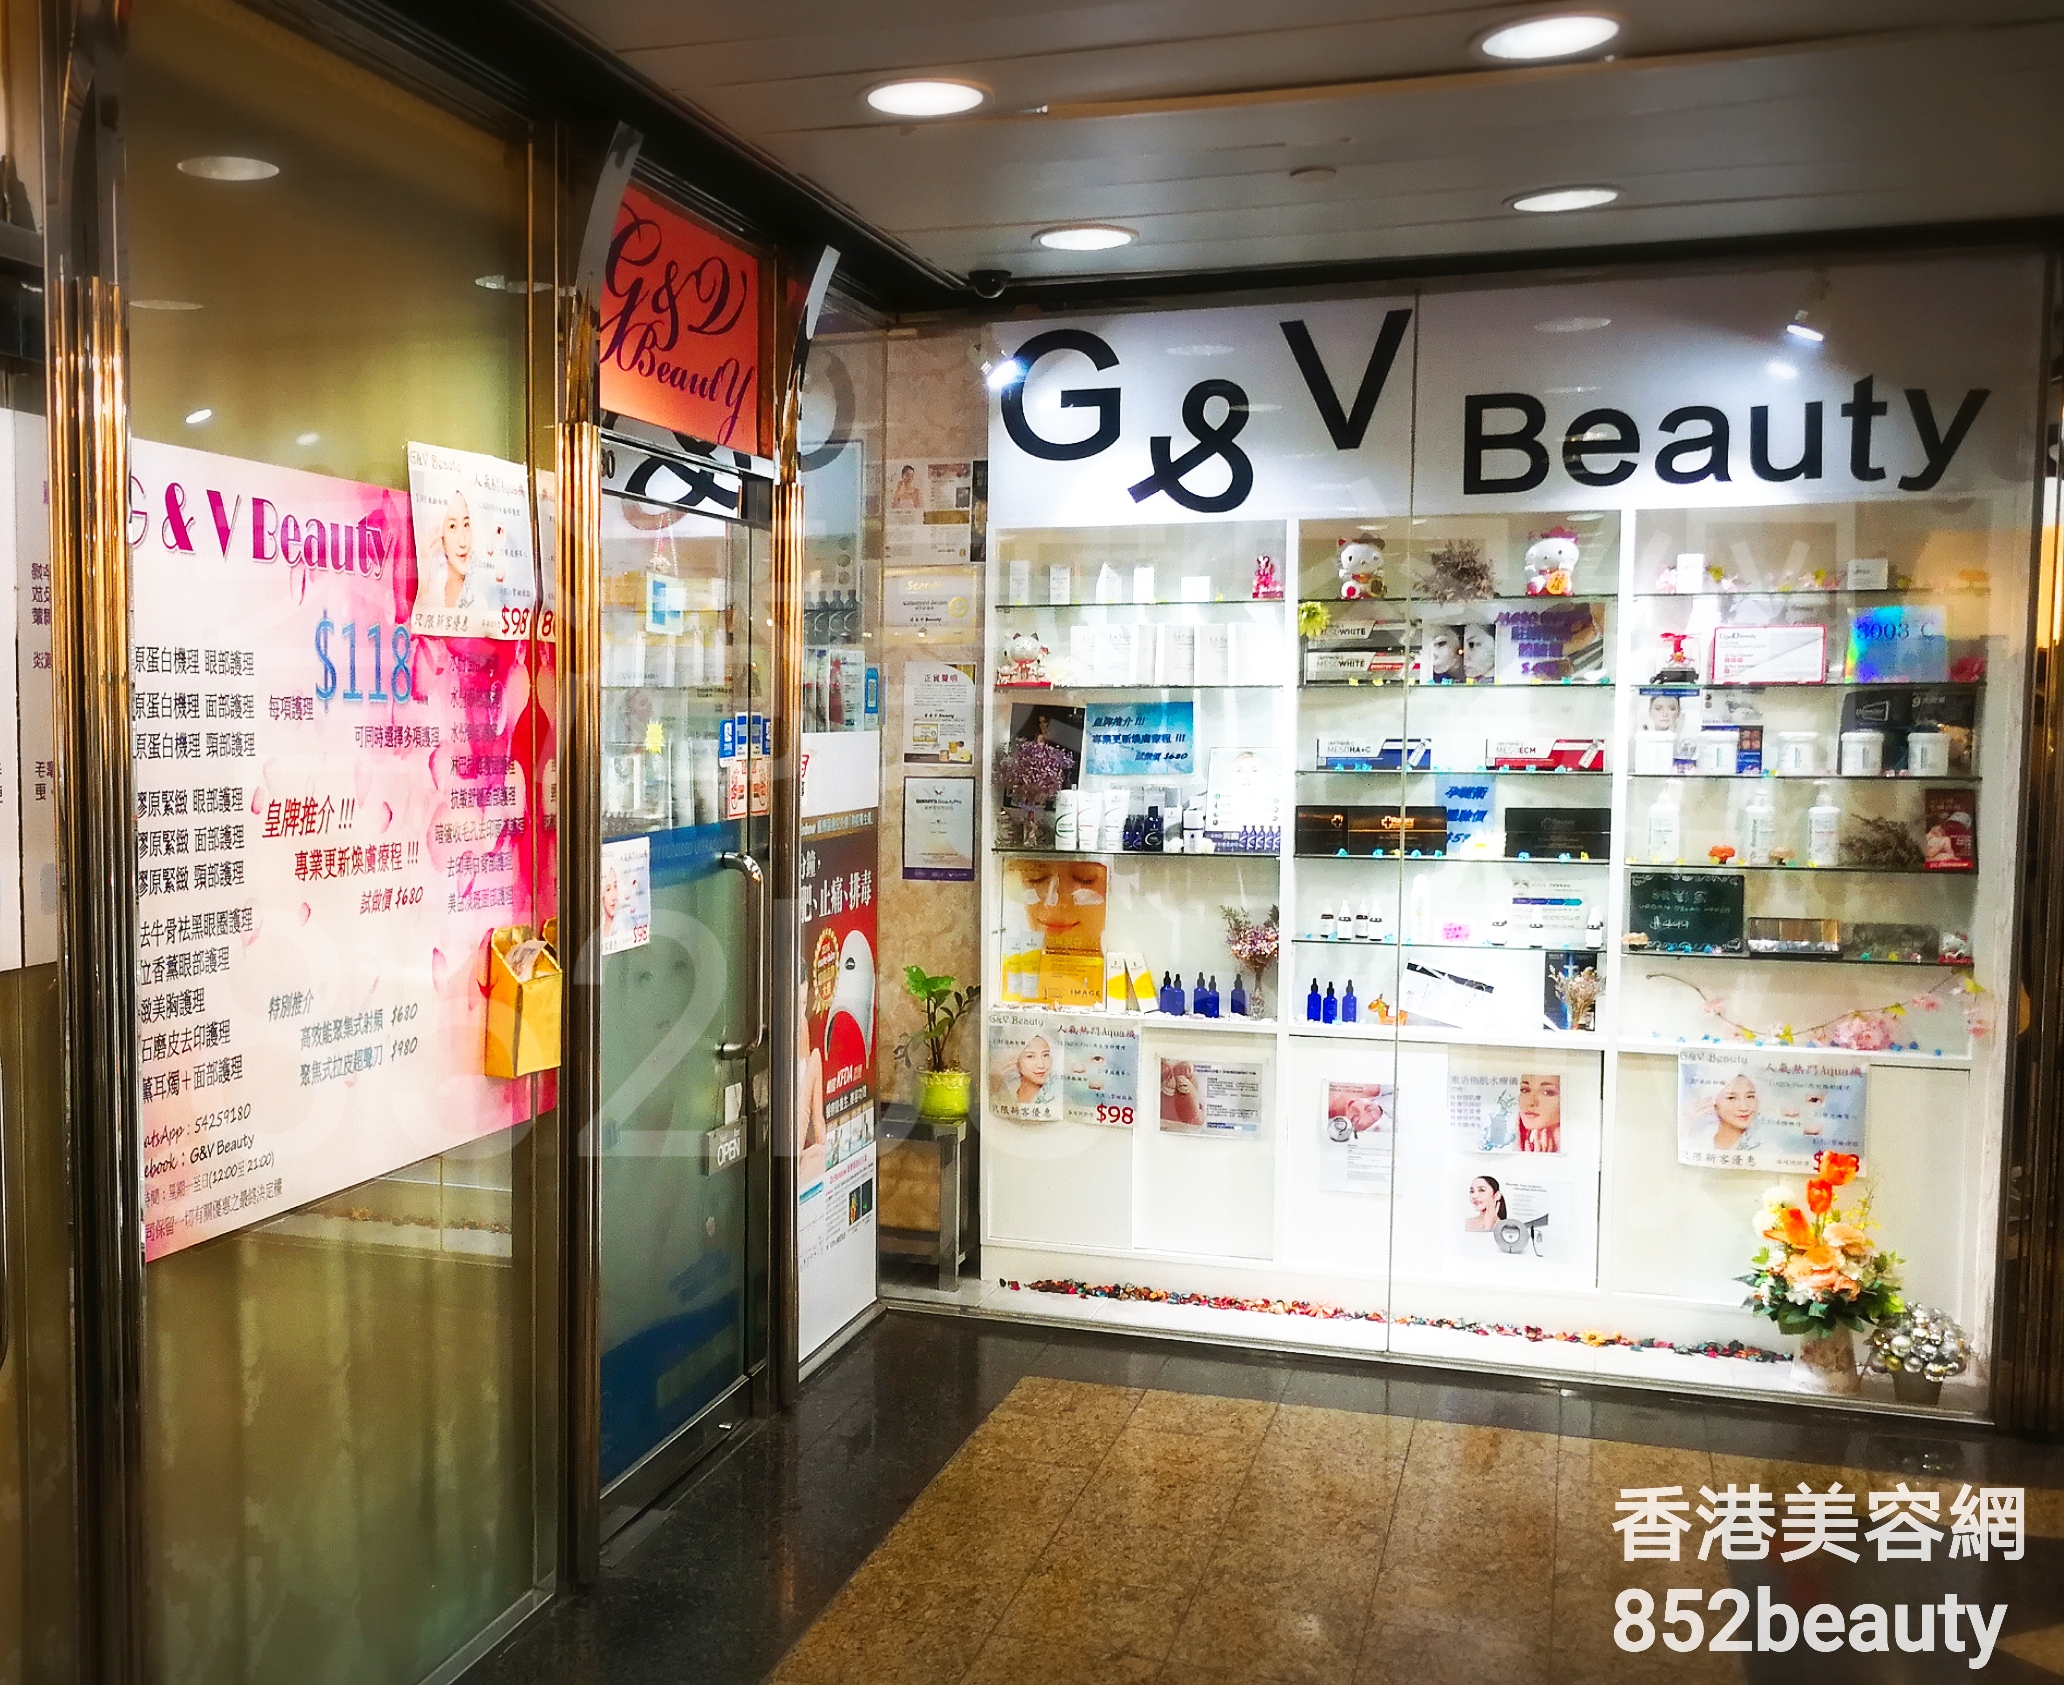 Massage/SPA: G&V Beauty